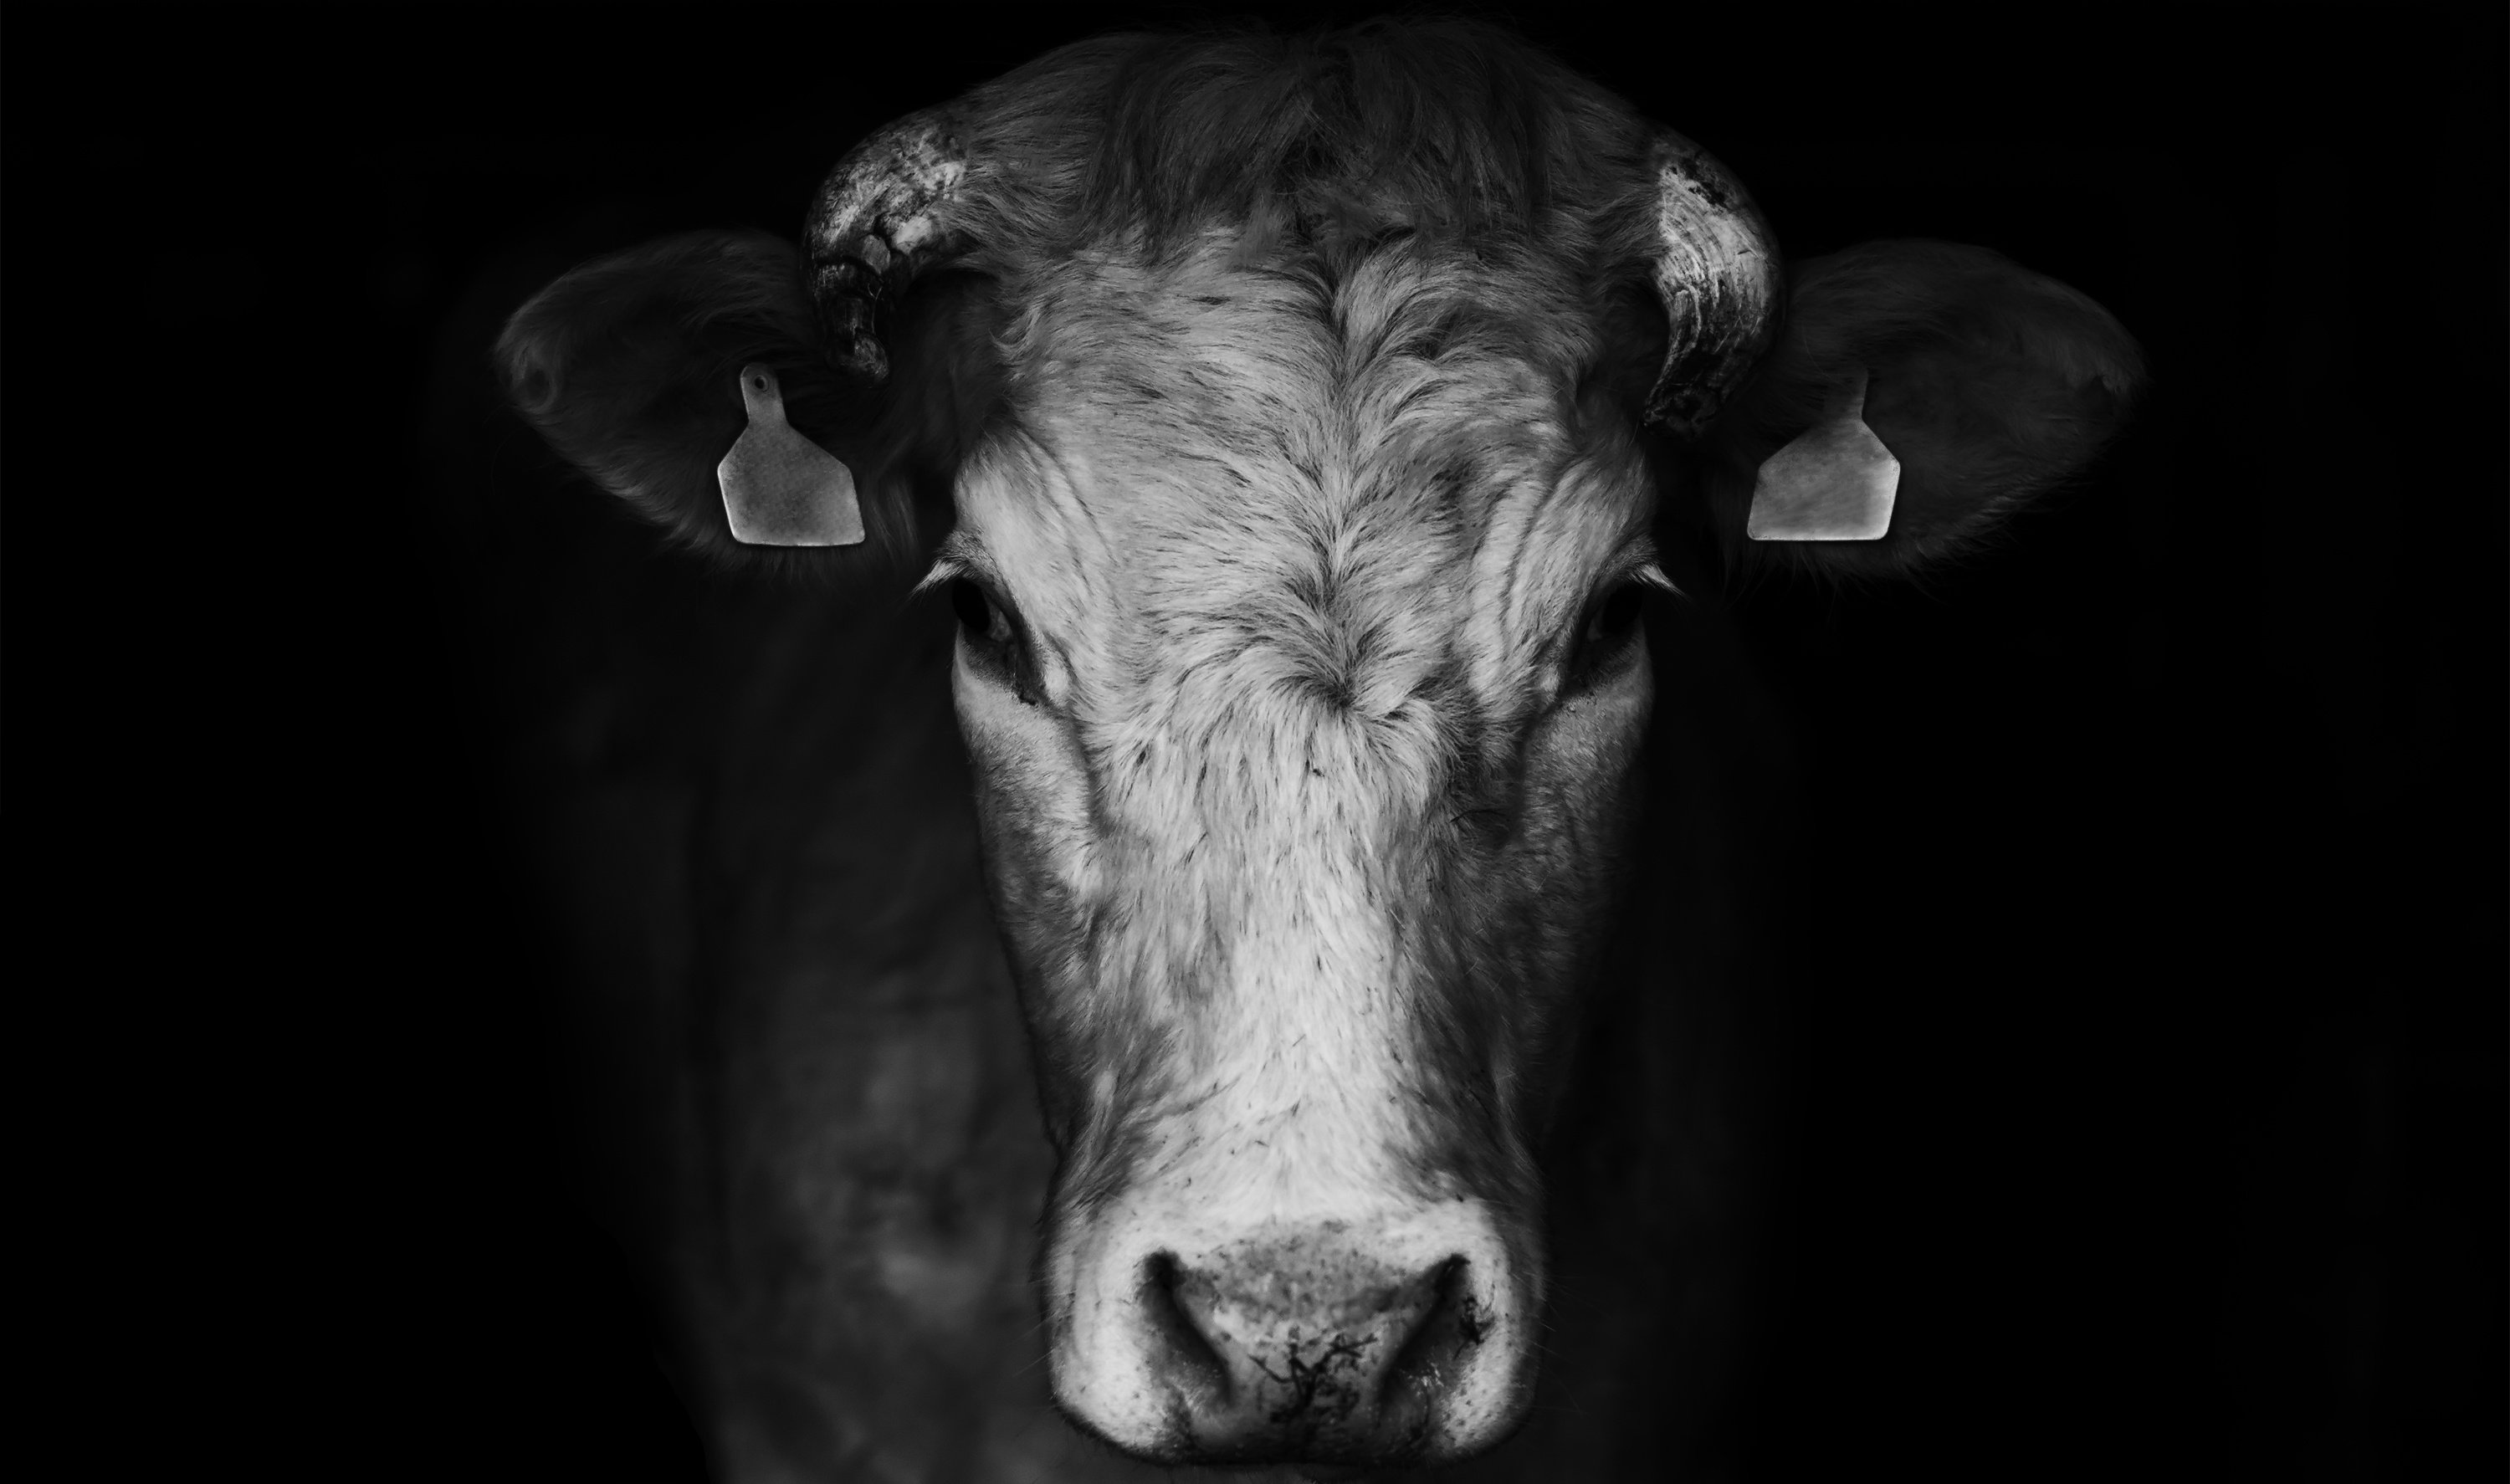 Bild schwarz weiß von einem Rind mit Blick in Kamera